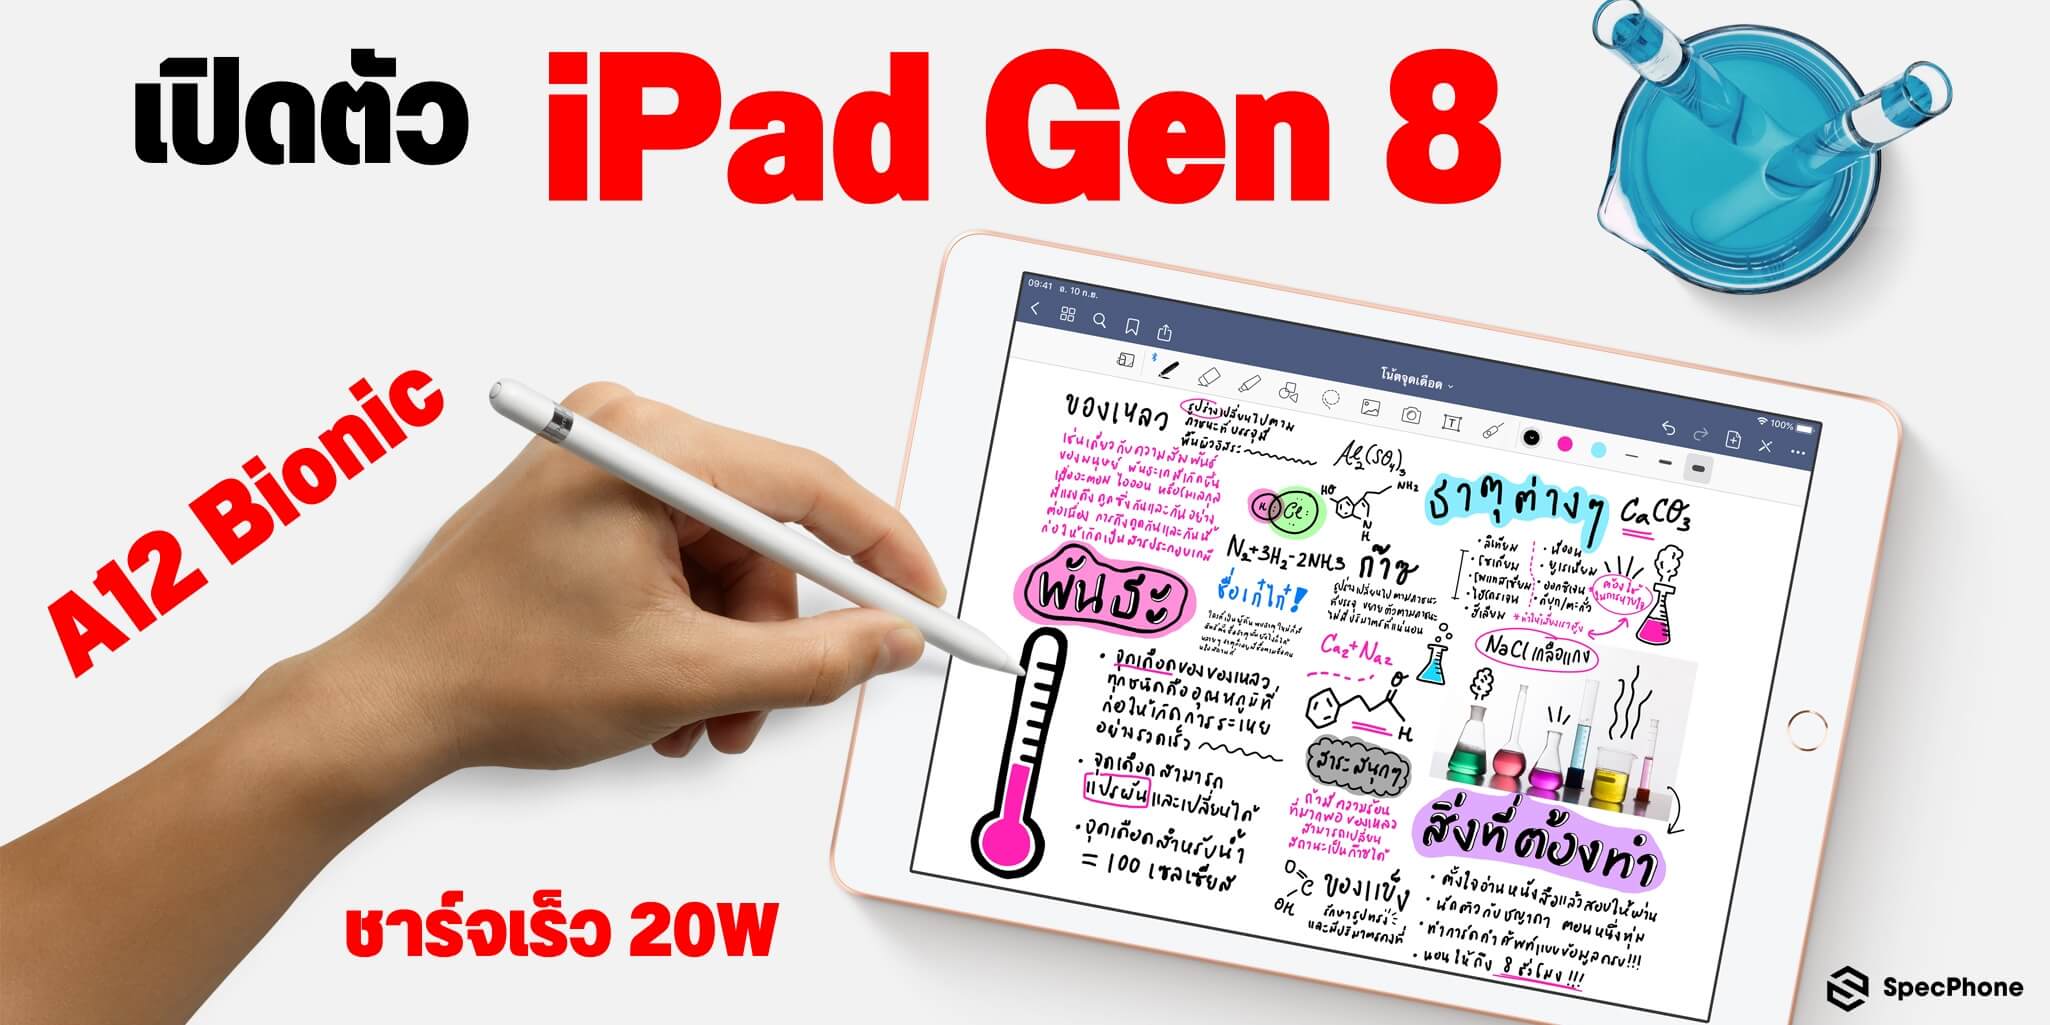 เปิดตัว iPad Gen 8 มาพร้อมชิป Apple A12 Bionic รูปทรงเดิม ราคาเป็นมิตรเท่าเดิม